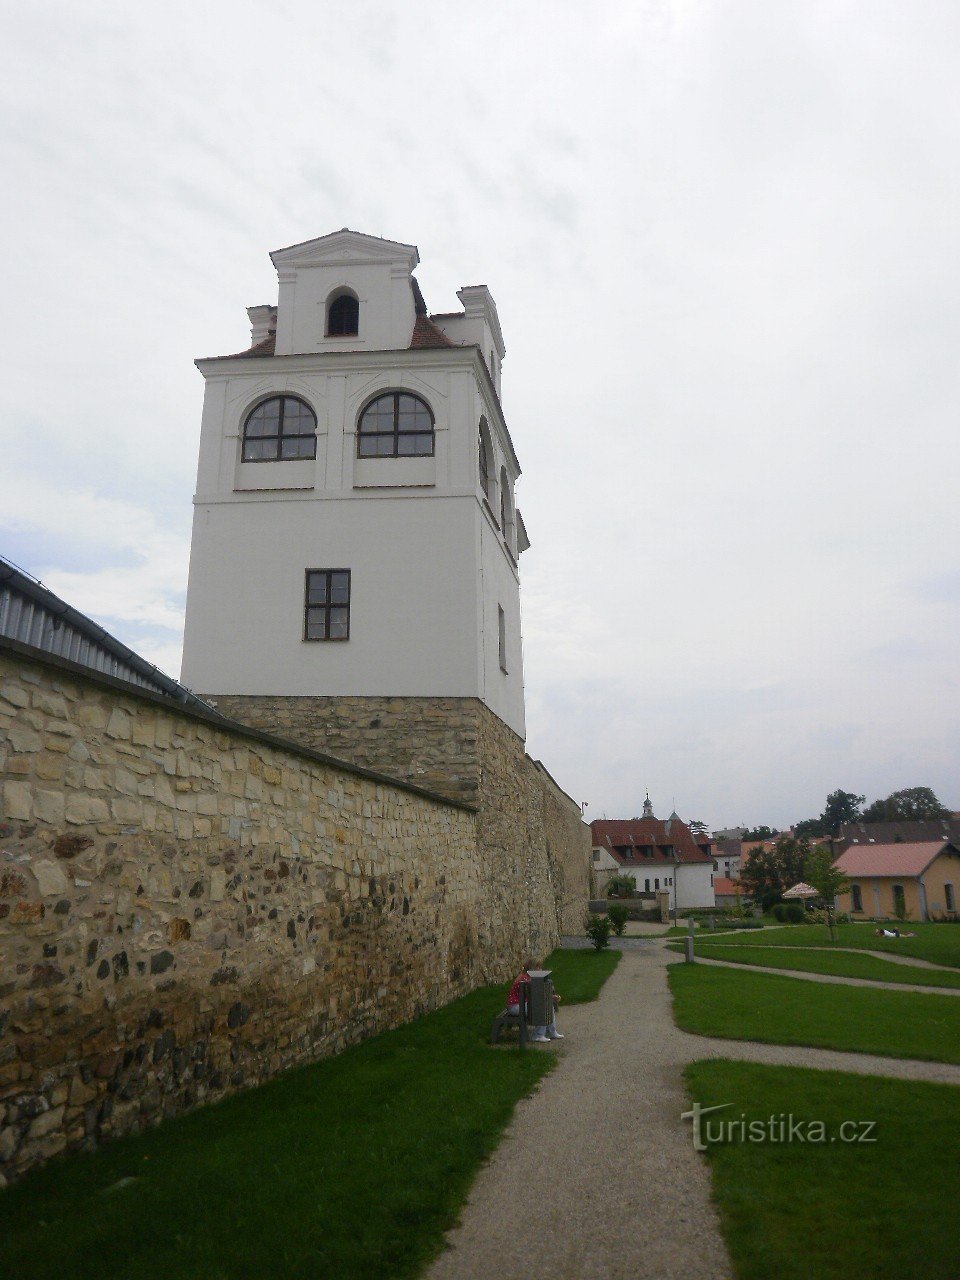 Litoměřice es una ciudad en la confluencia del Elba y Ohře